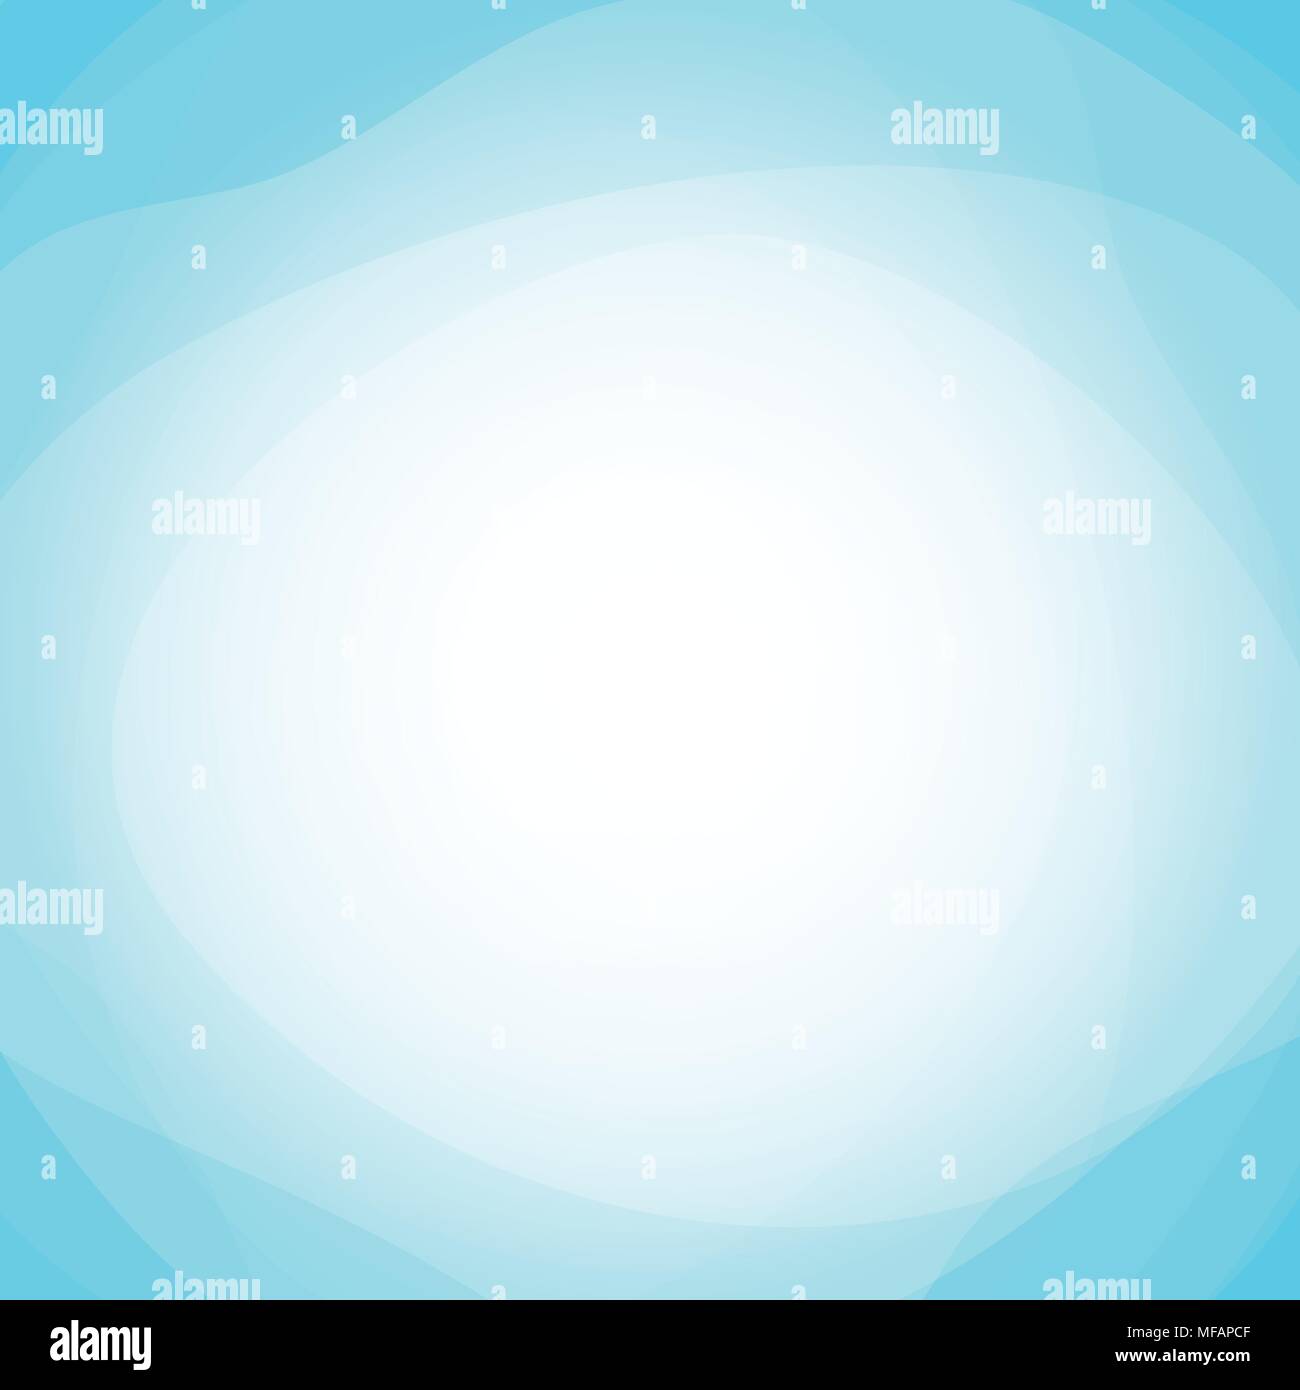 Vektor Zusammenfassung Hintergrund mit Leuchten und Glänzen im Zentrum - Blauer Hintergrund der Klaren Himmel mit Tender und leichte Stimmung. Stock Vektor